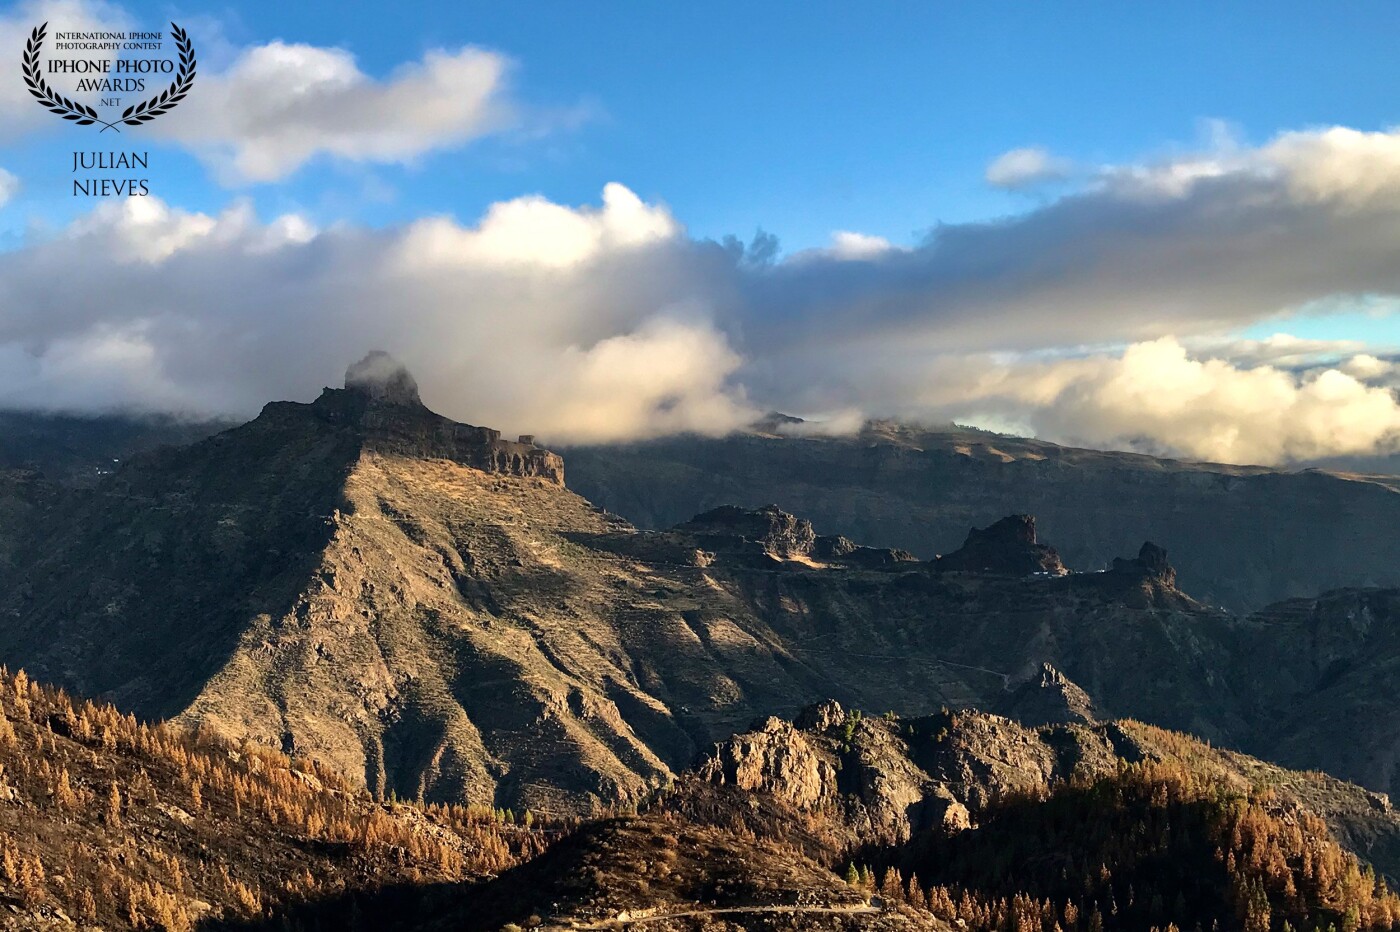 Imagen realizada al atardecer en la isla de Las Palmas de Gran Canaria, es uno de los iconos de la isla el Roque Bentayga, es toda una casualidad verlo entre nubes y poderlo fotografíar es una suerte,  ya que la mayoría de las veces es ver las nubes por debajo del Roque.